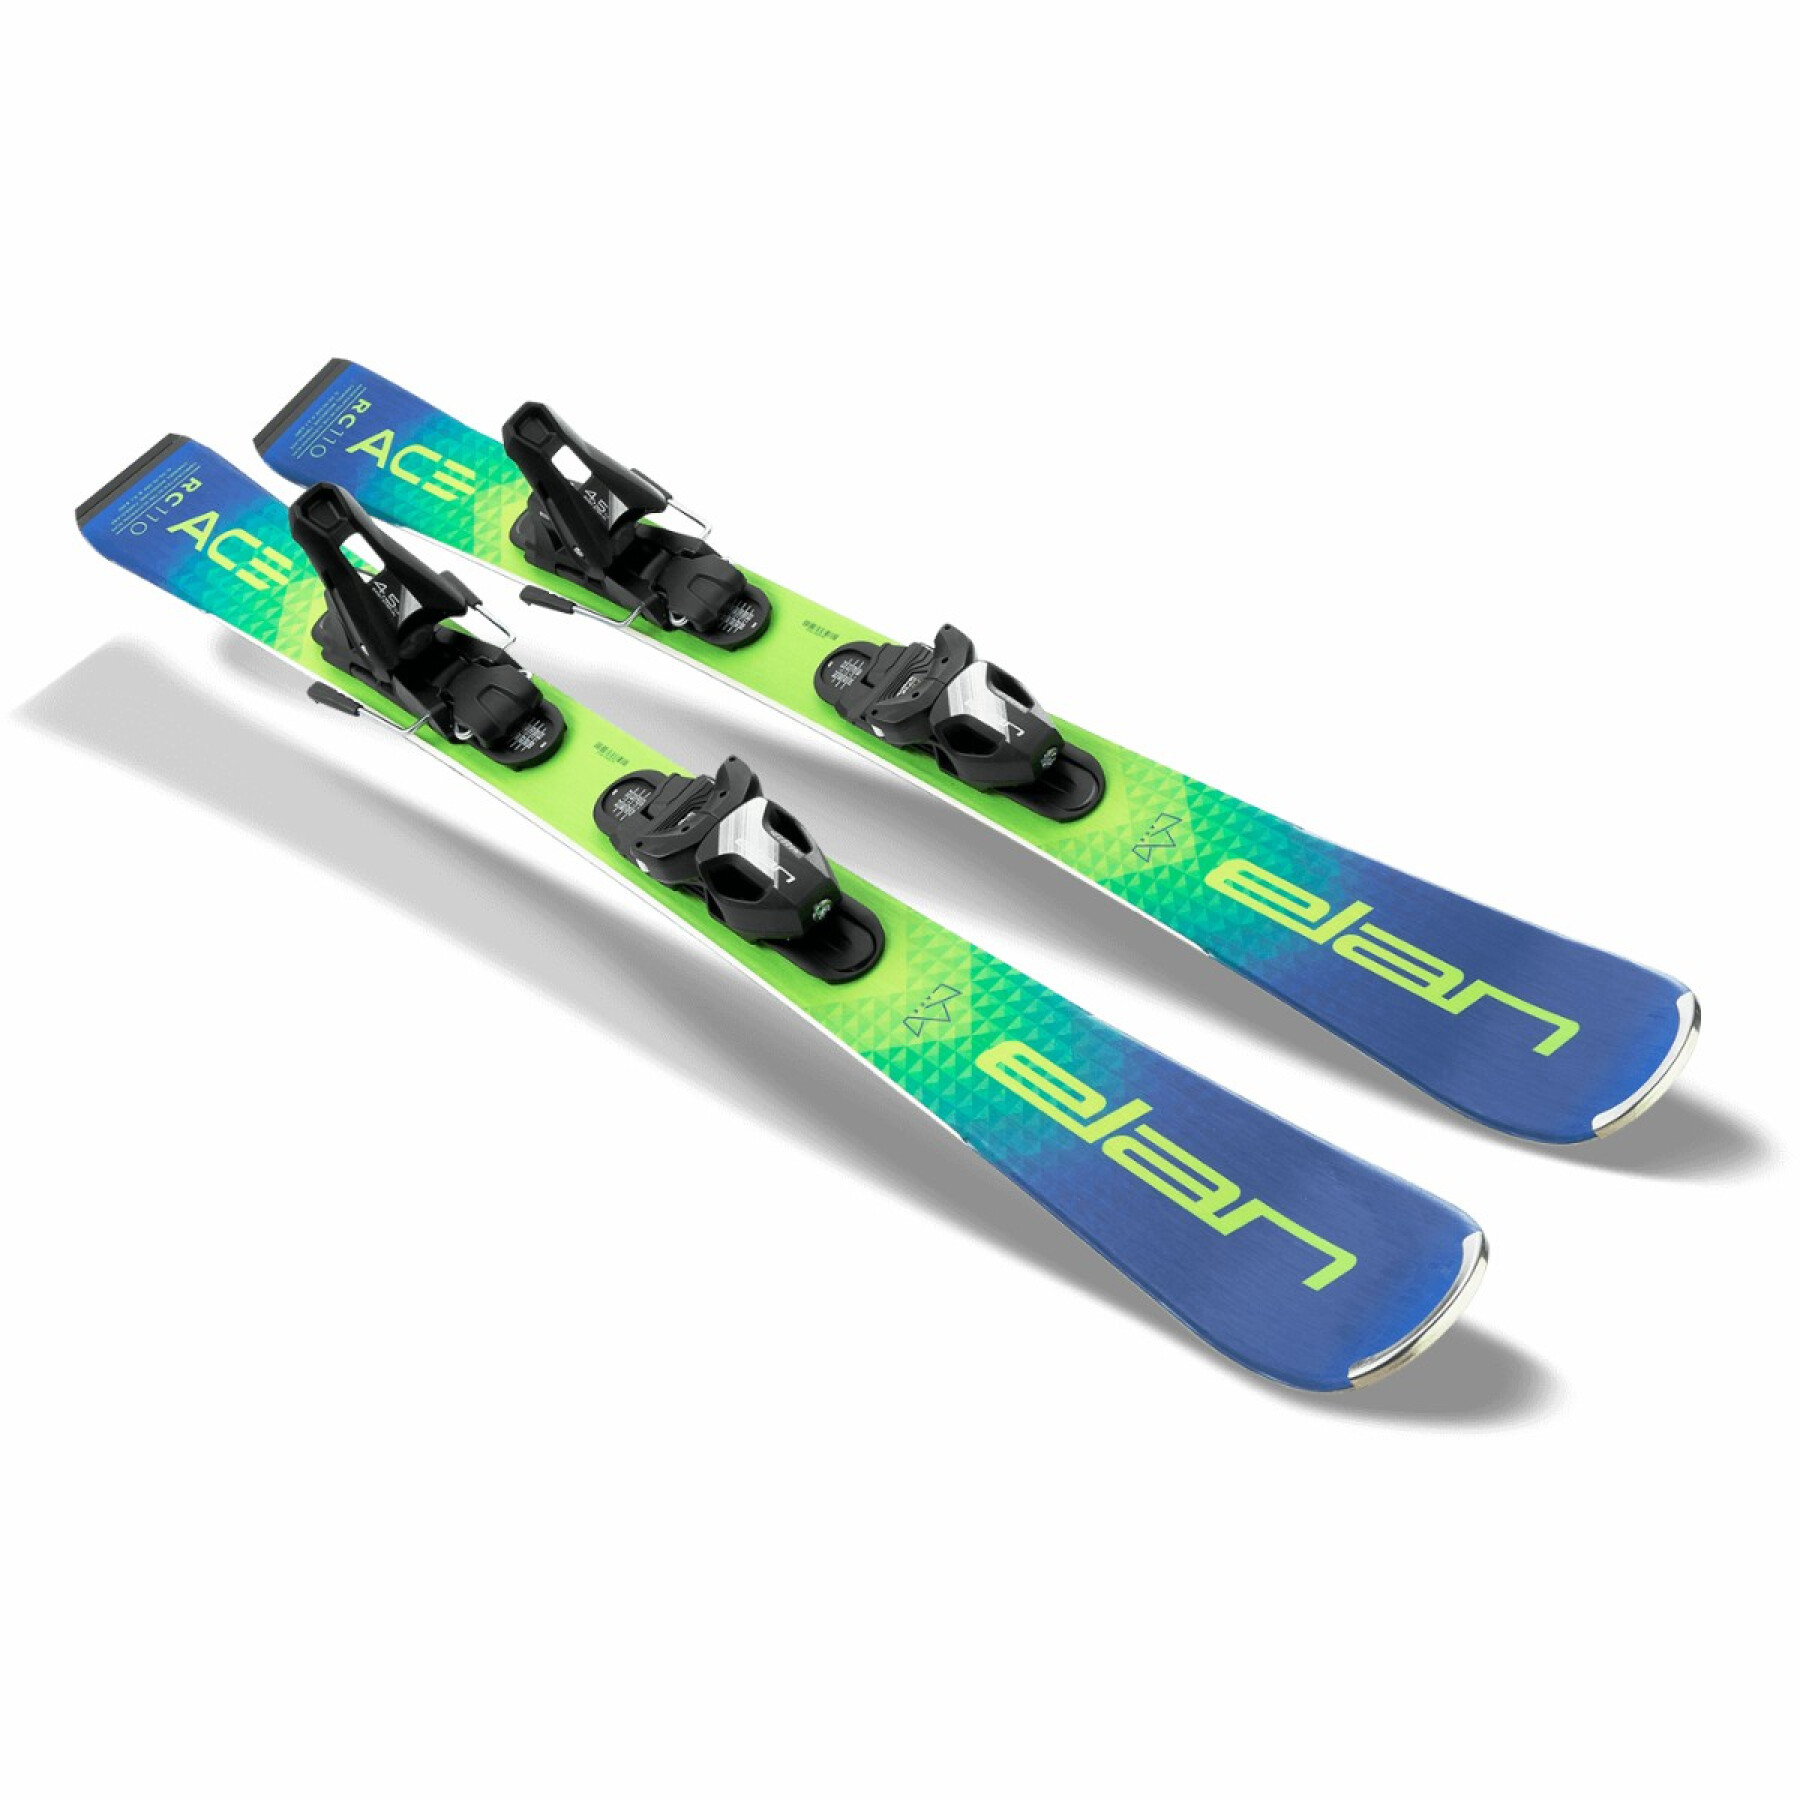 pack de esqui rc ace 4.5 com fixações para crianças Elan